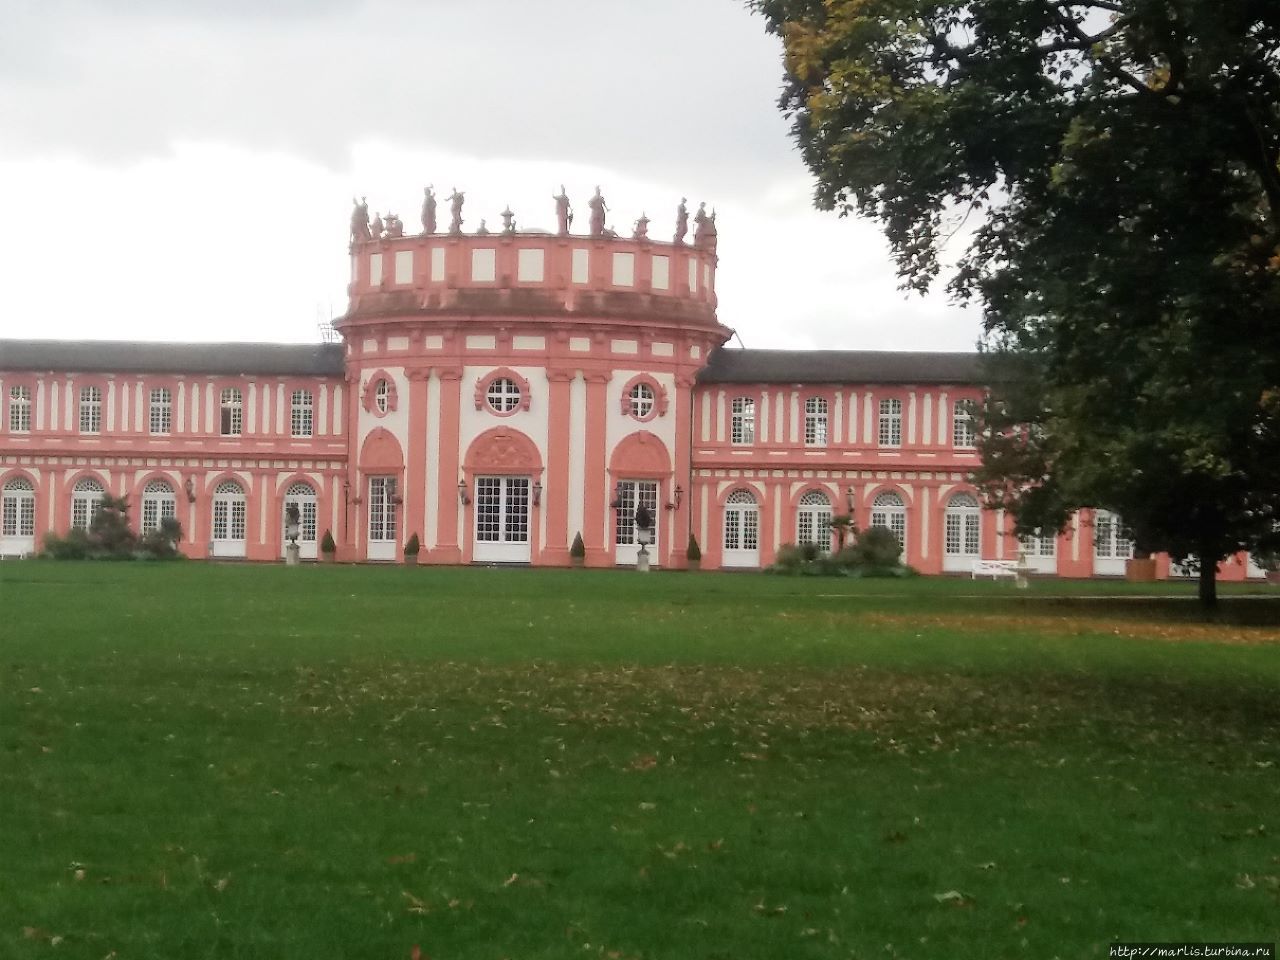 Ландшафтный парк и дворец Бибрих Висбаден, Германия